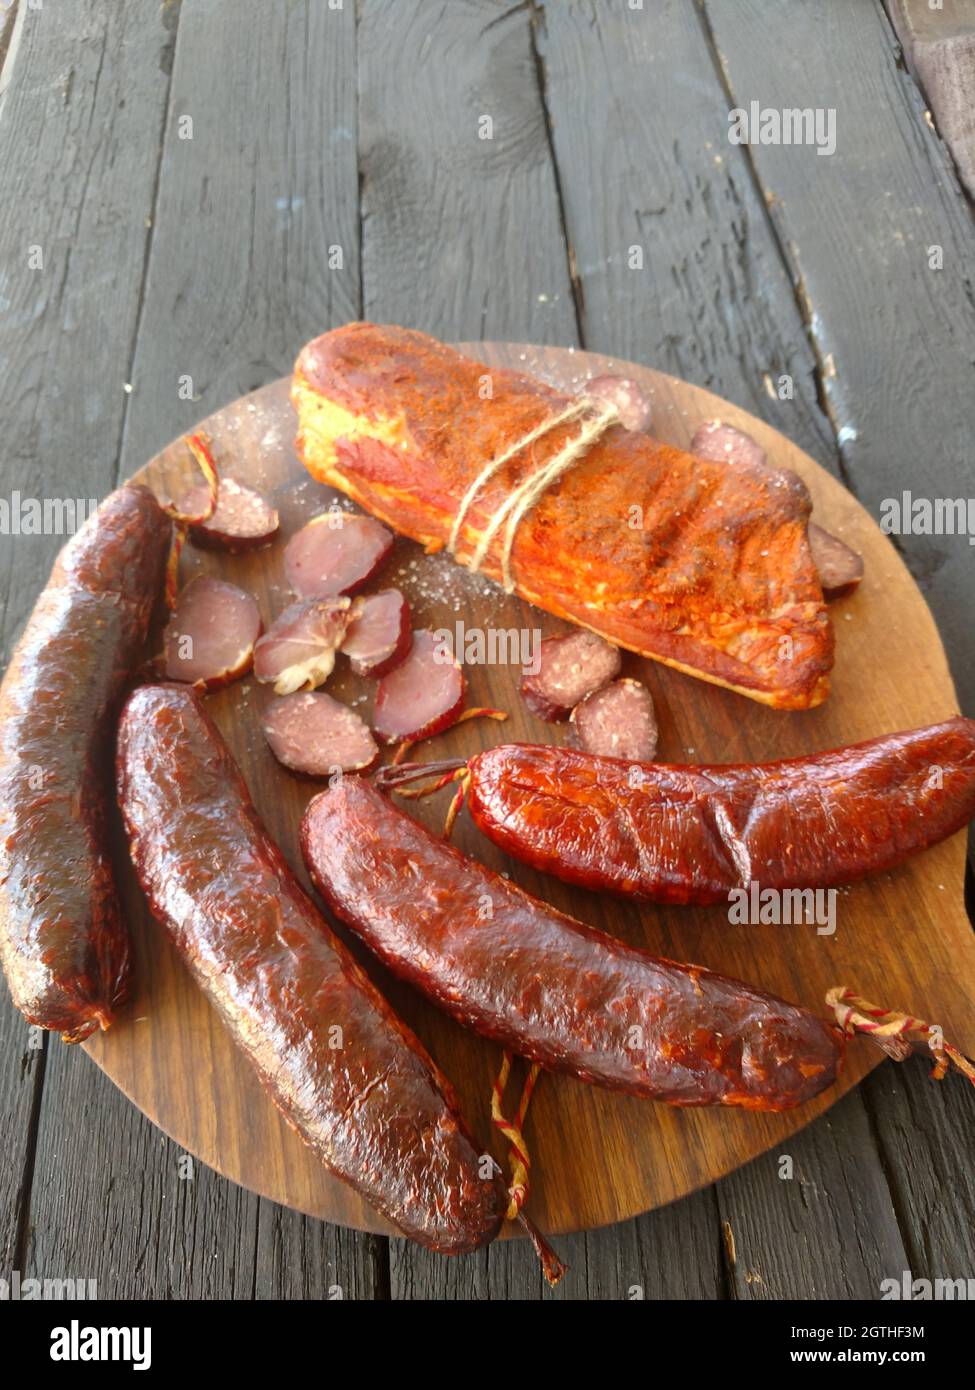 High Angle View Of Home Made Smoked Sausage On Table Stock Photo